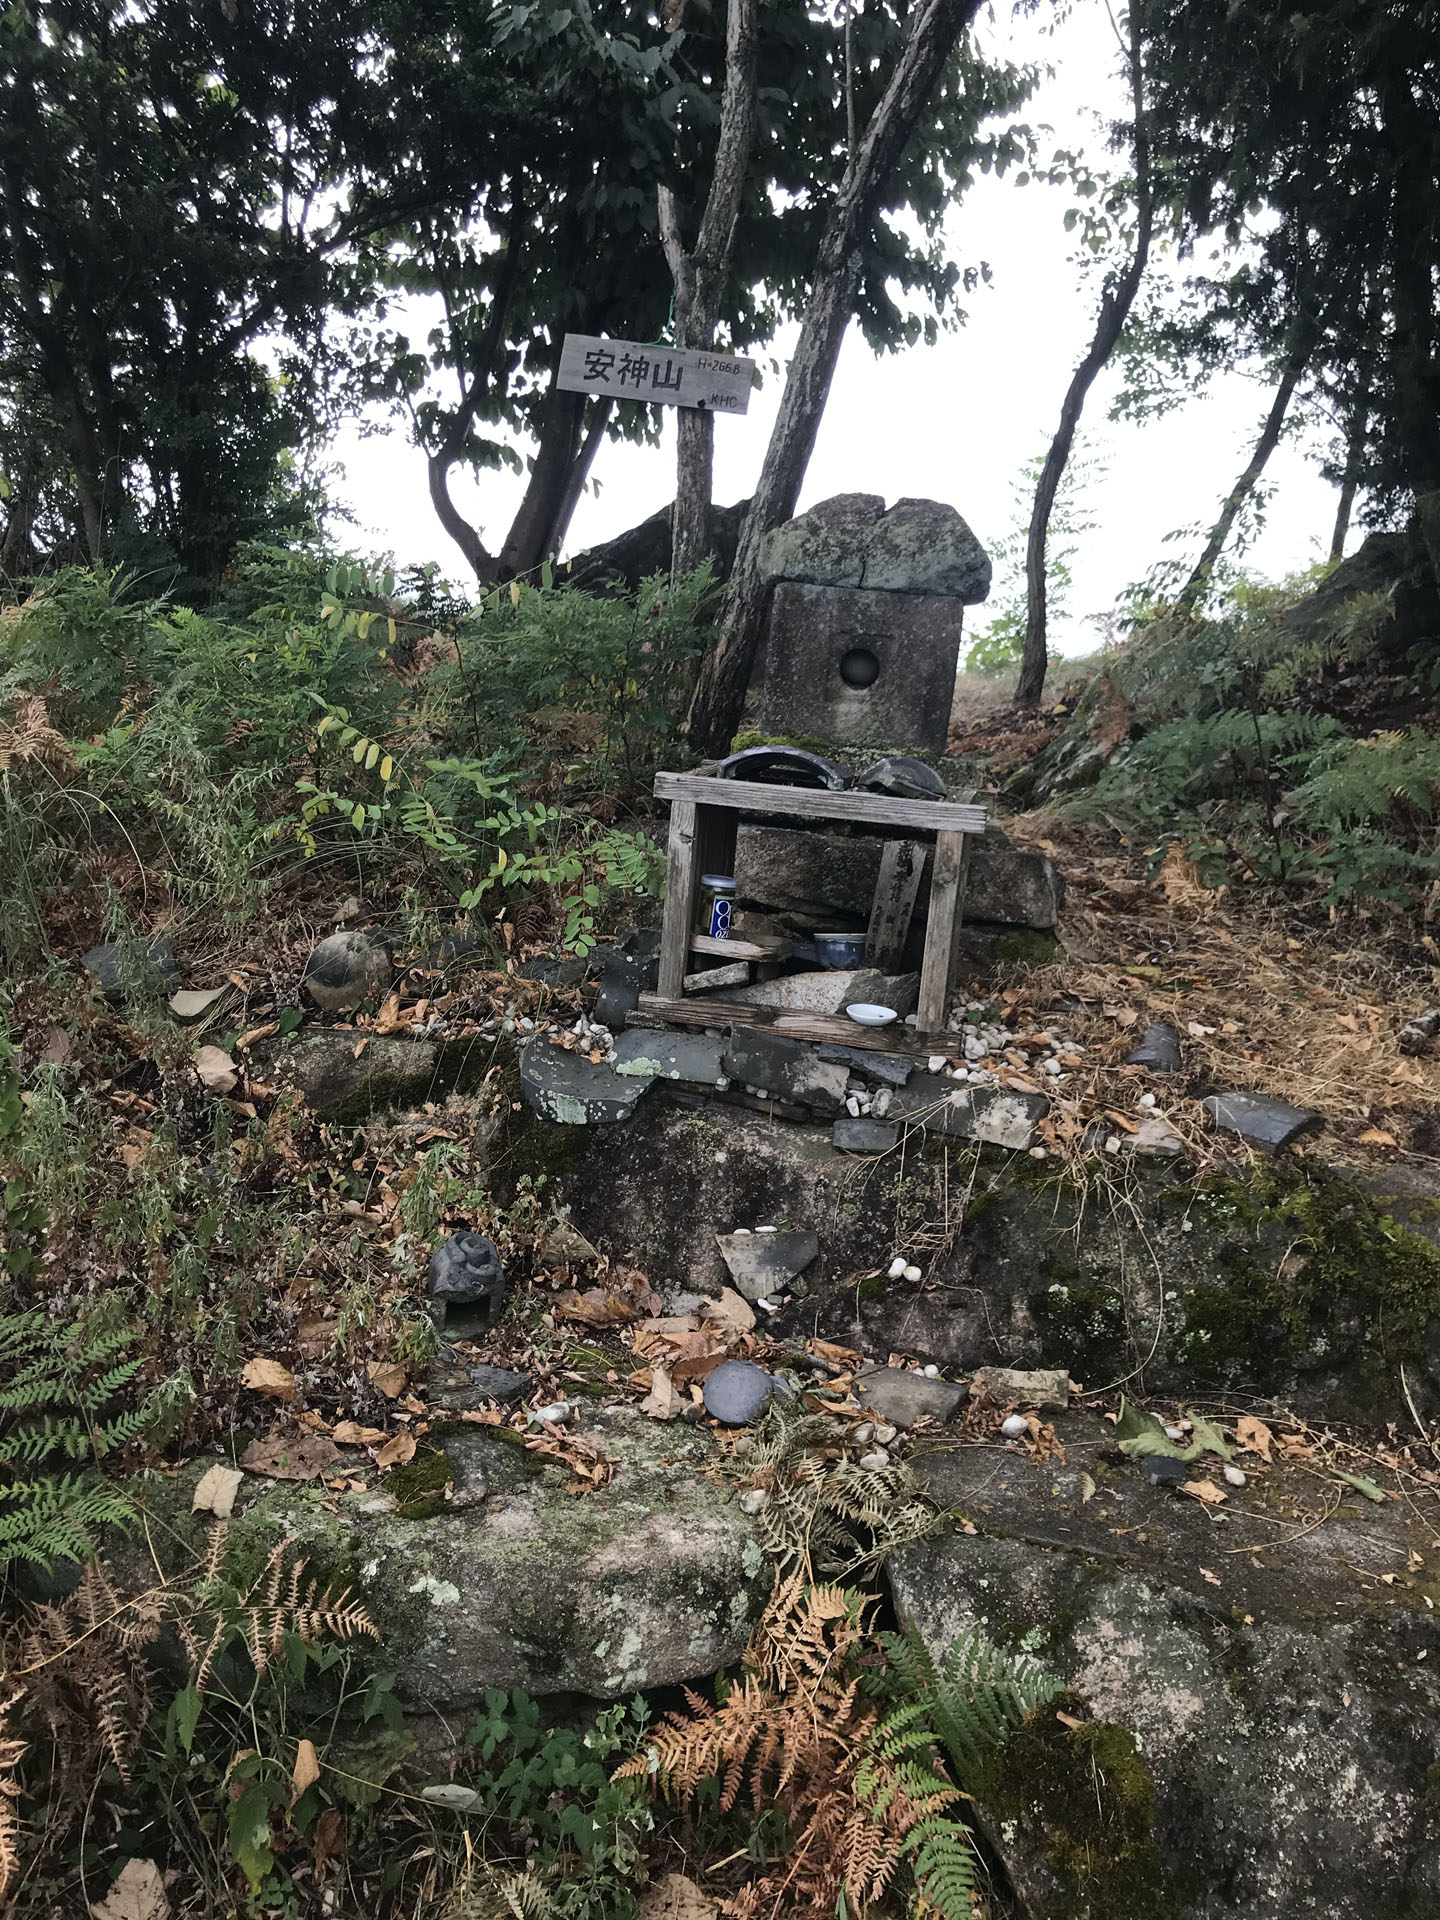 安神山頂上到着。
ここで休憩しようと思ったけど、虫が多いし座りやすそうな場所もなかったのですぐに烏帽子岩を目指します。

